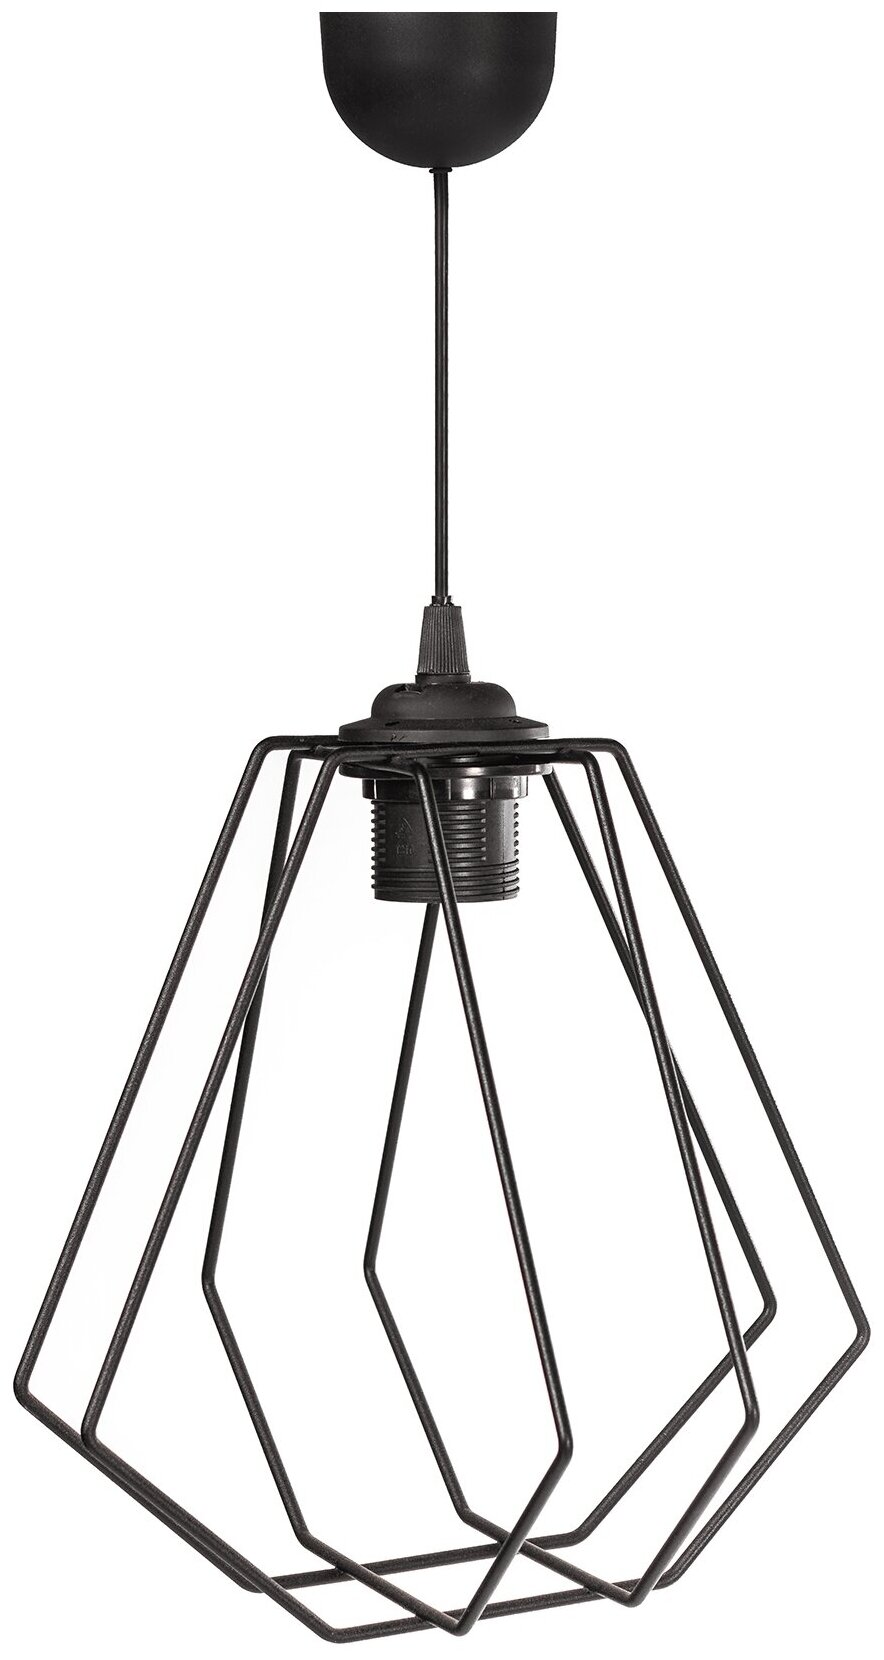 Светильник ilwi INT-W-SP-K-1-P/1 потолочный подвесной металлический черный Конус, подарок на день рождения